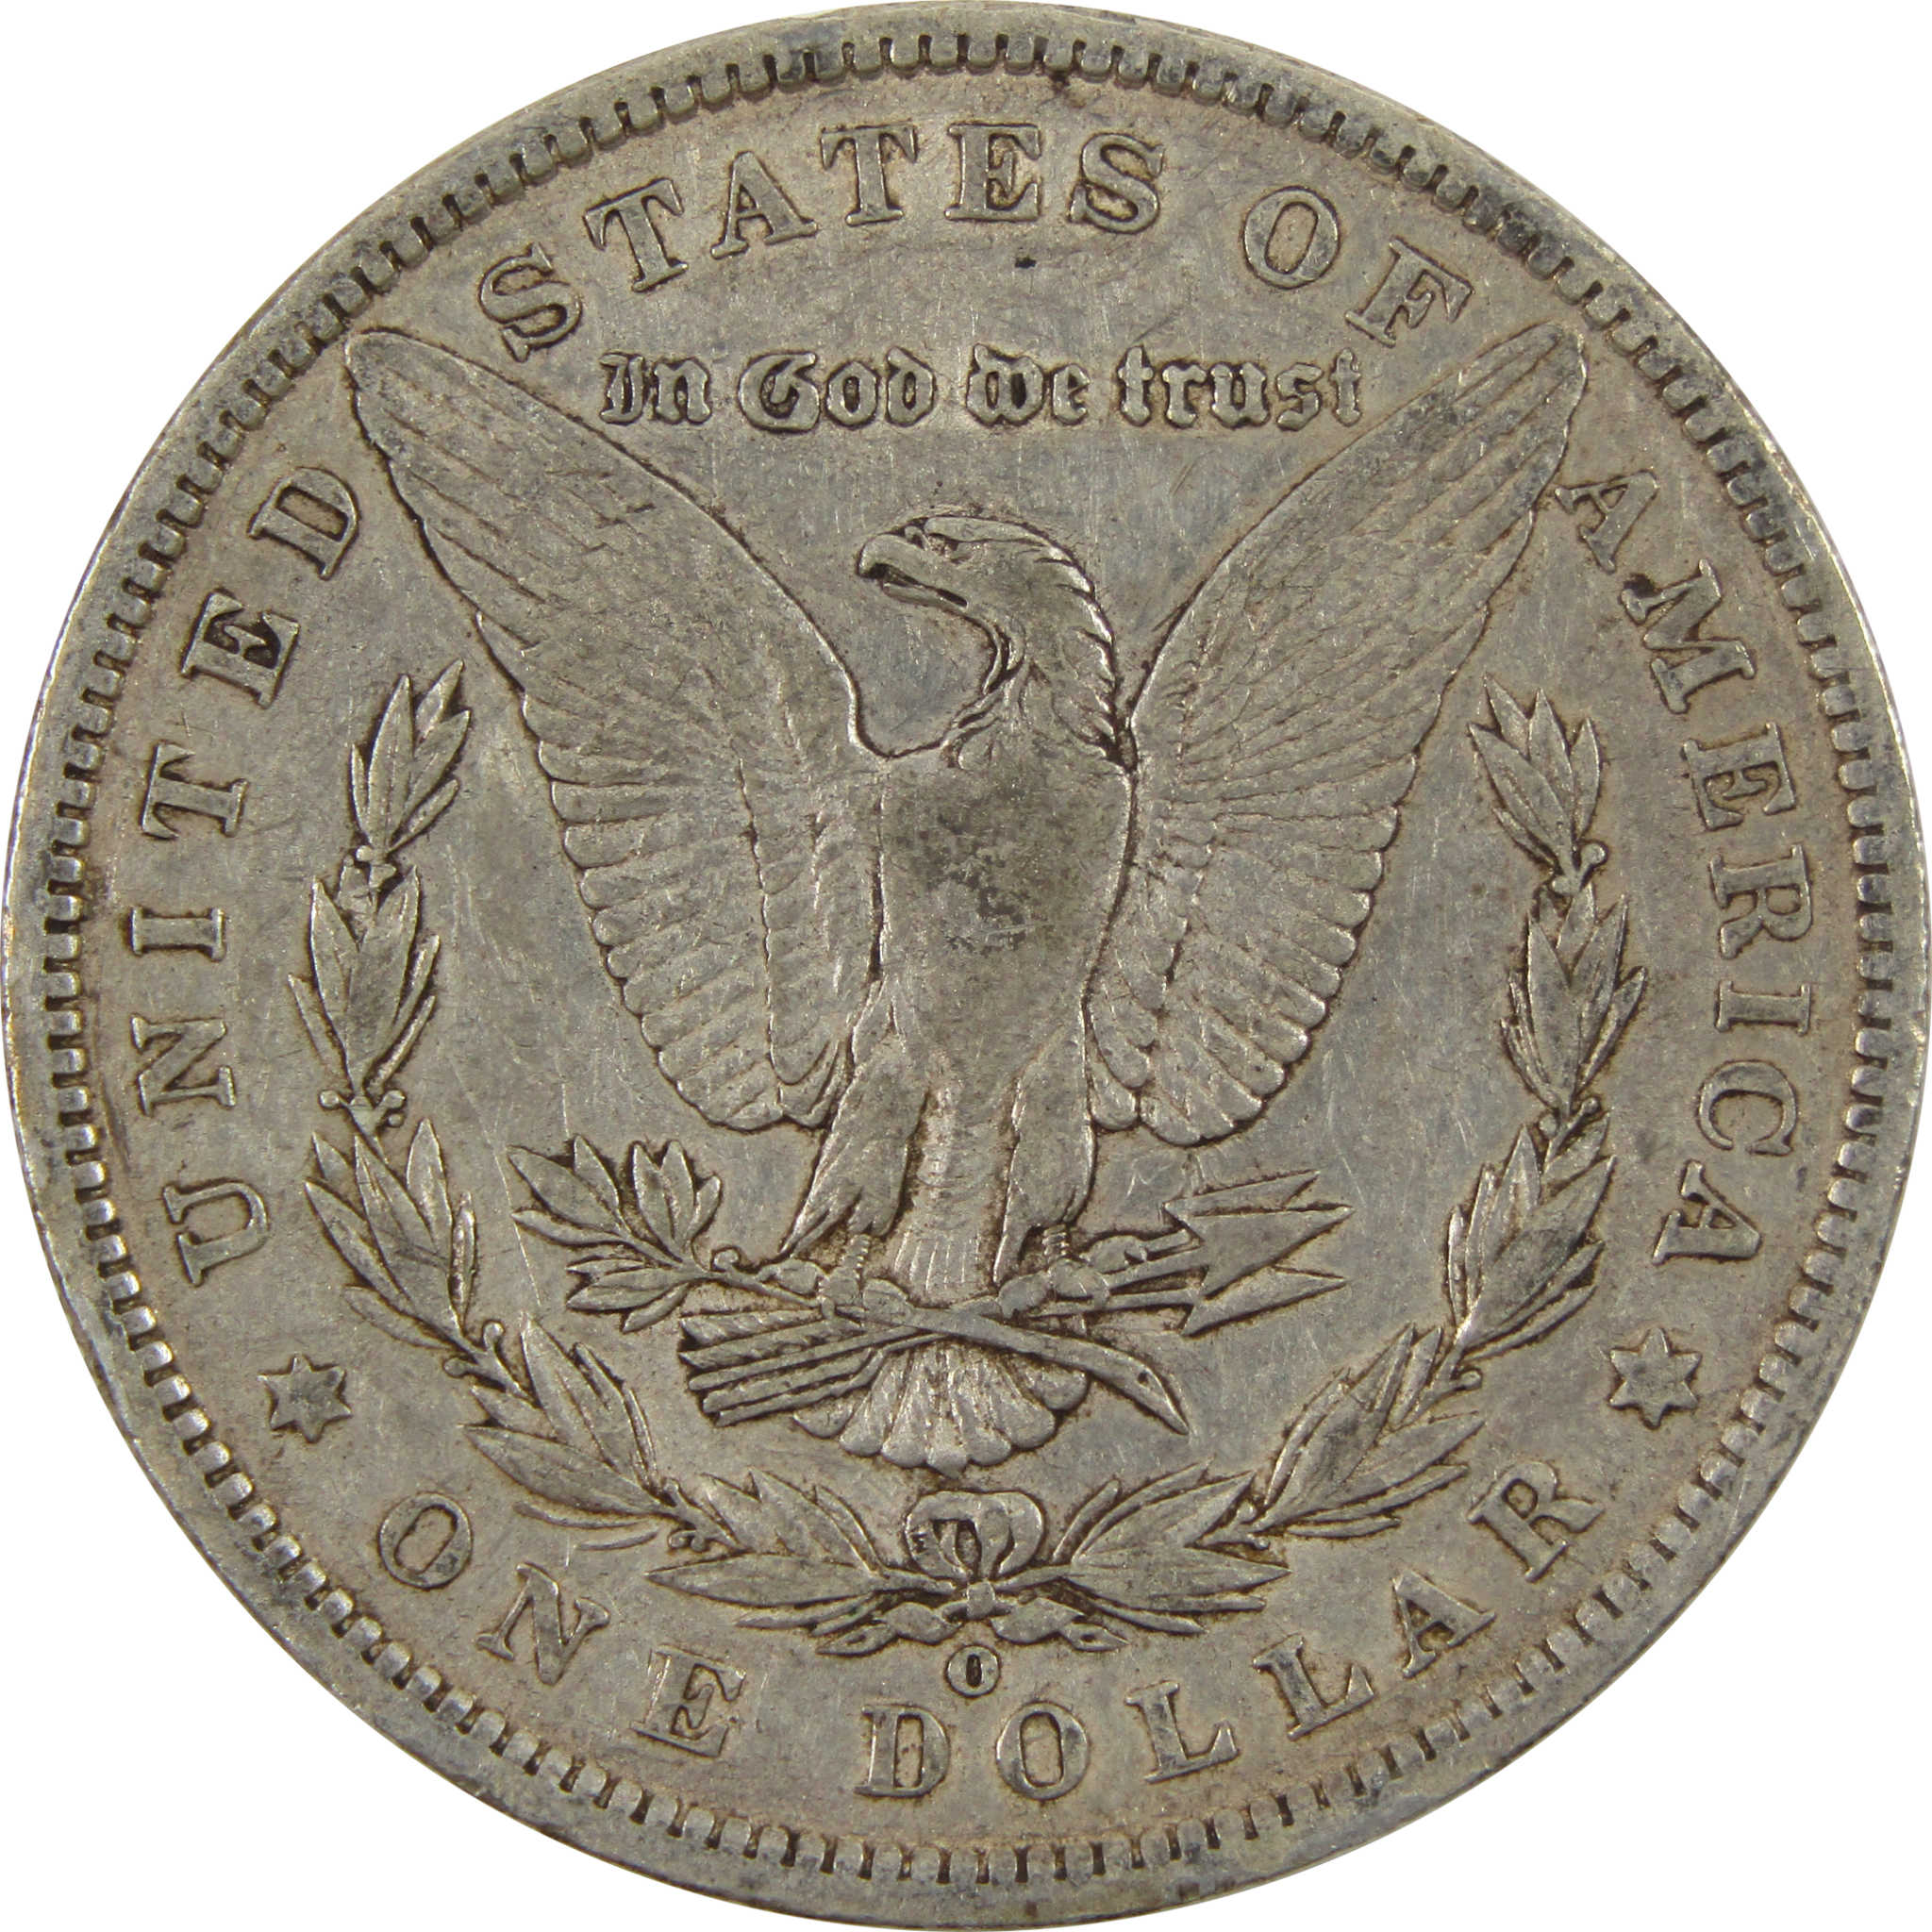 1886 O VAM-1A Morgan Dollar VF Very Fine 90% Silver $1 Coin SKU:I9165 - Morgan coin - Morgan silver dollar - Morgan silver dollar for sale - Profile Coins &amp; Collectibles